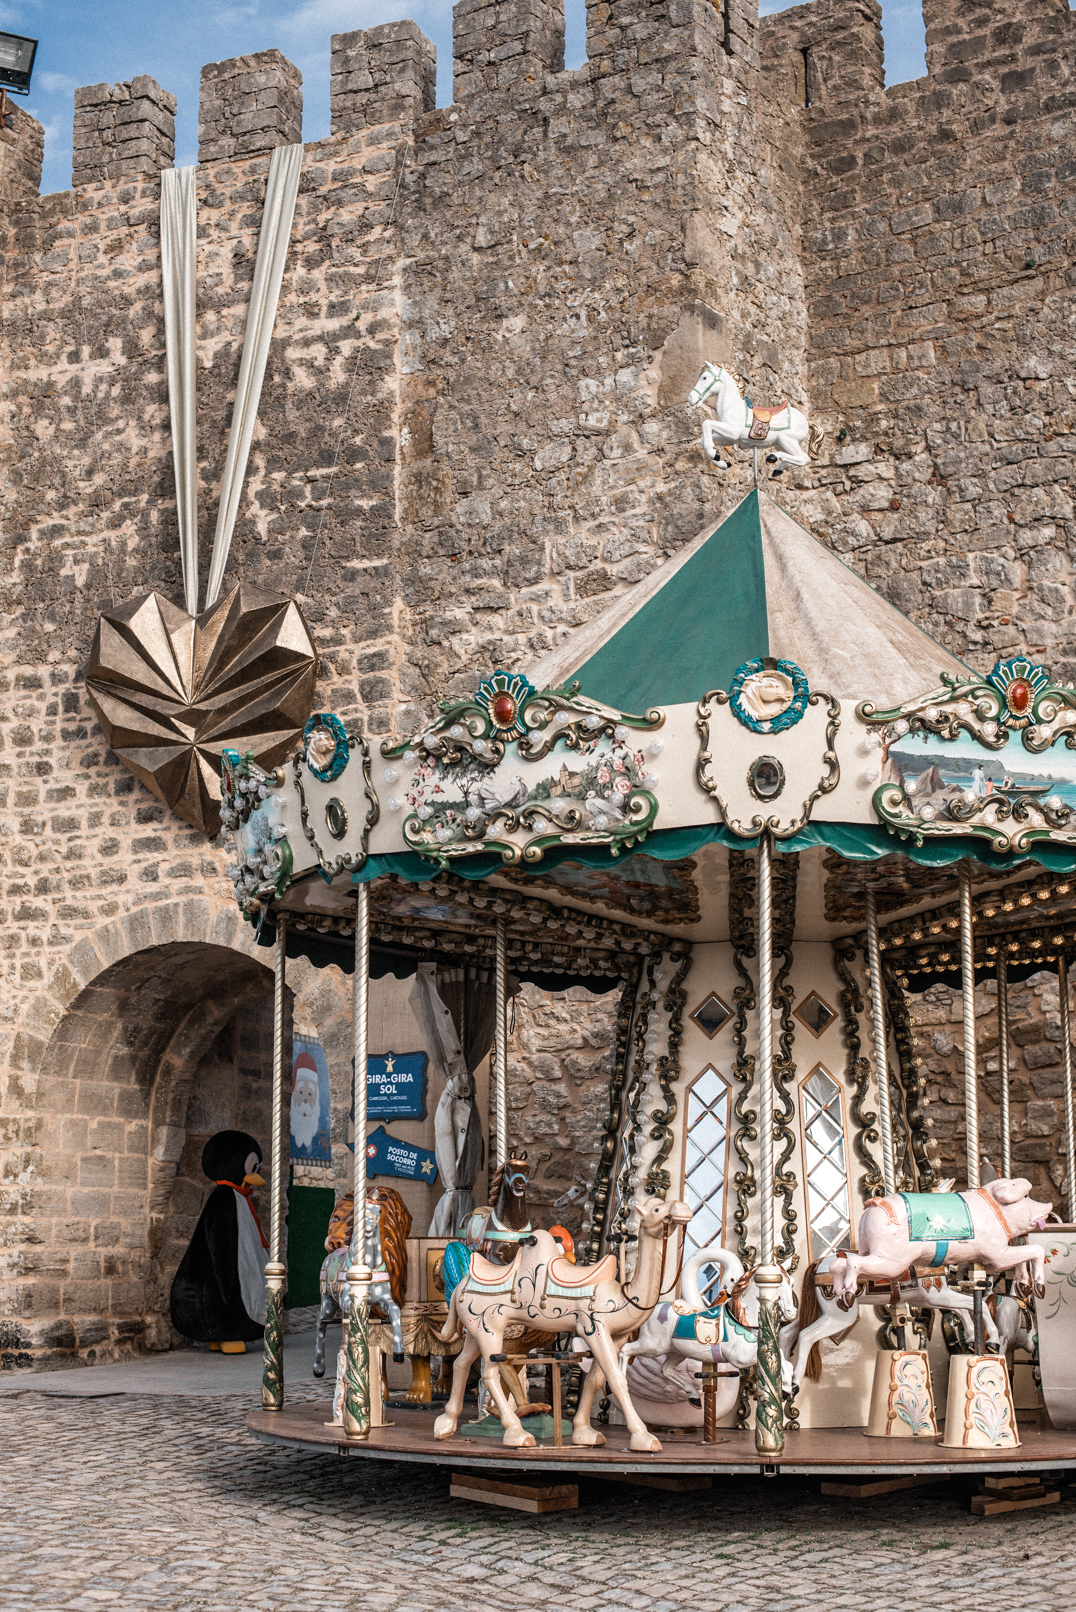 Óbidos Christmas market - Carousel